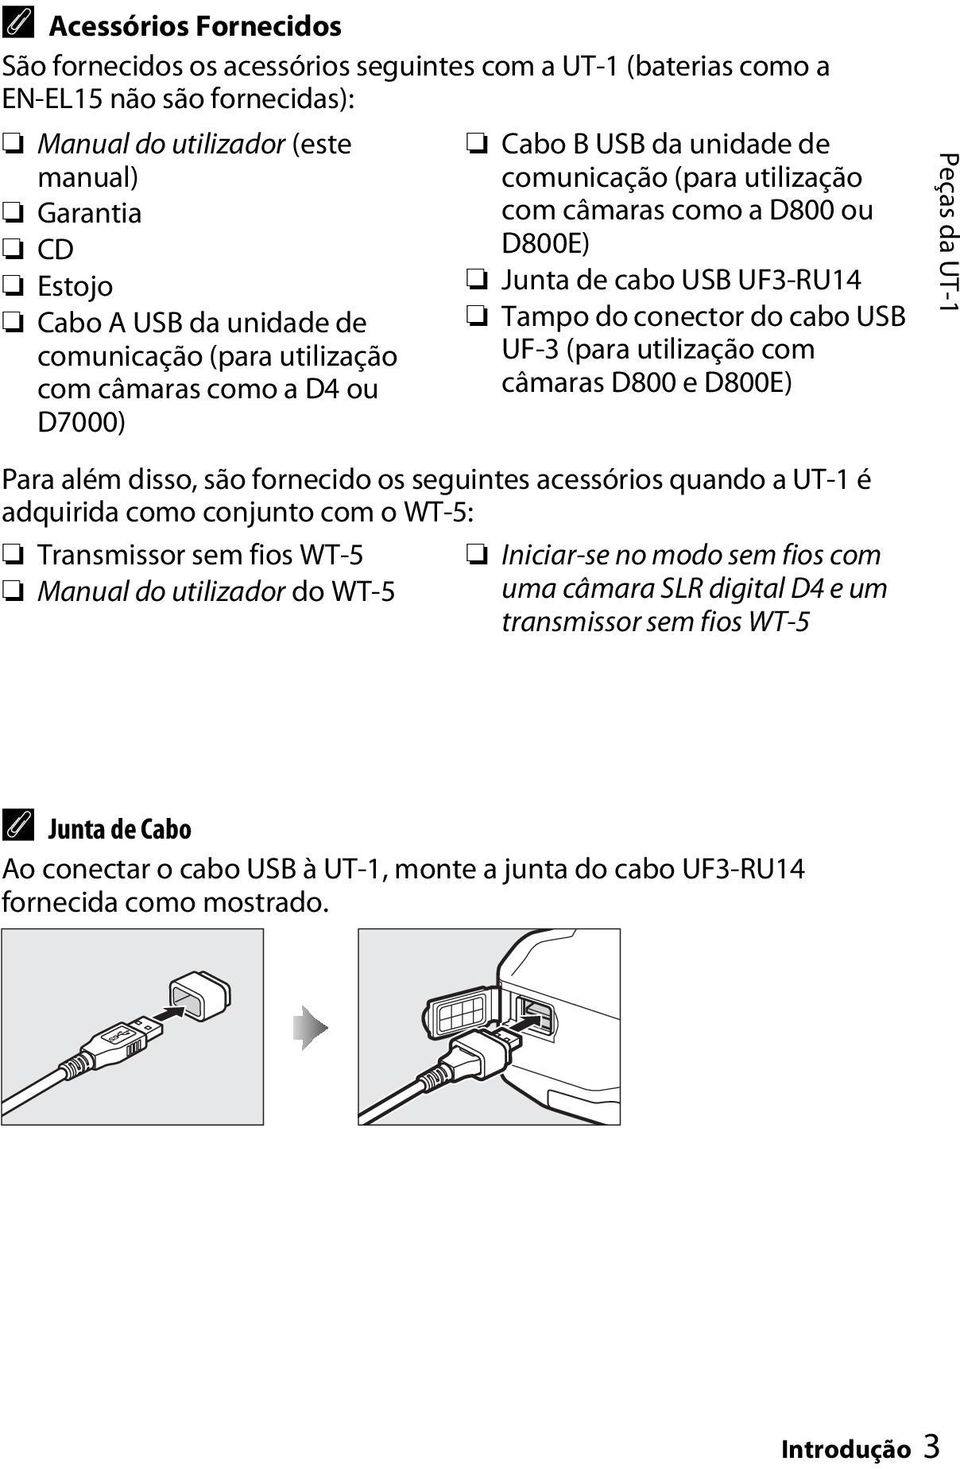 cabo USB UF-3 (para utilização com câmaras D800 e D800E) Peças da UT-1 Para além disso, são fornecido os seguintes acessórios quando a UT-1 é adquirida como conjunto com o WT-5: Transmissor sem fios